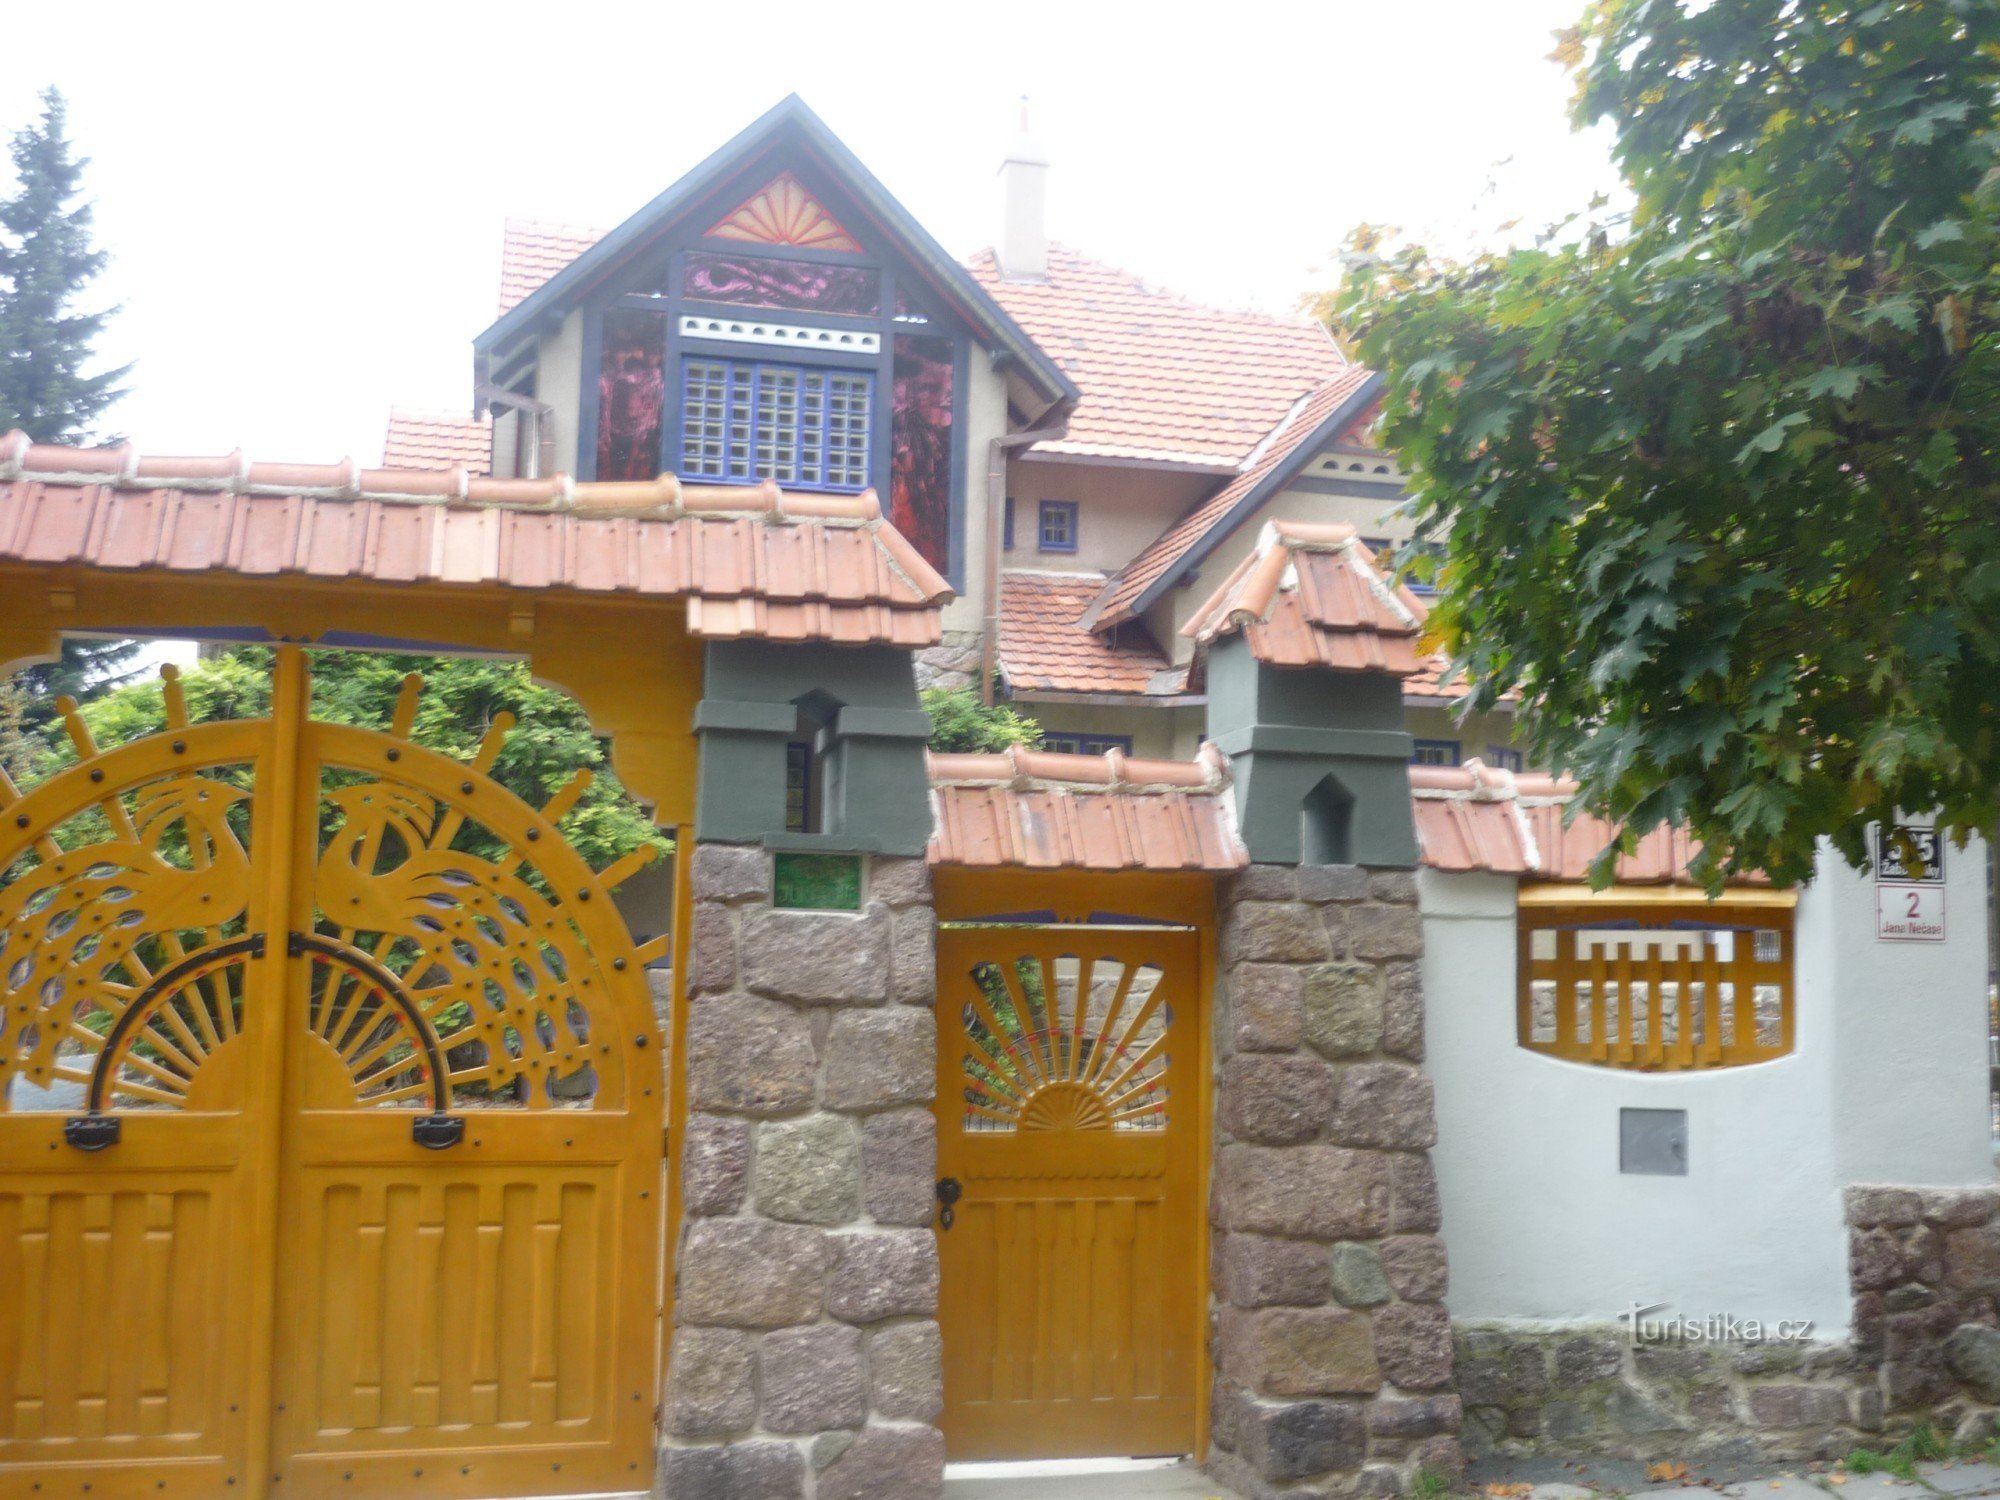 Jurkovič's villa